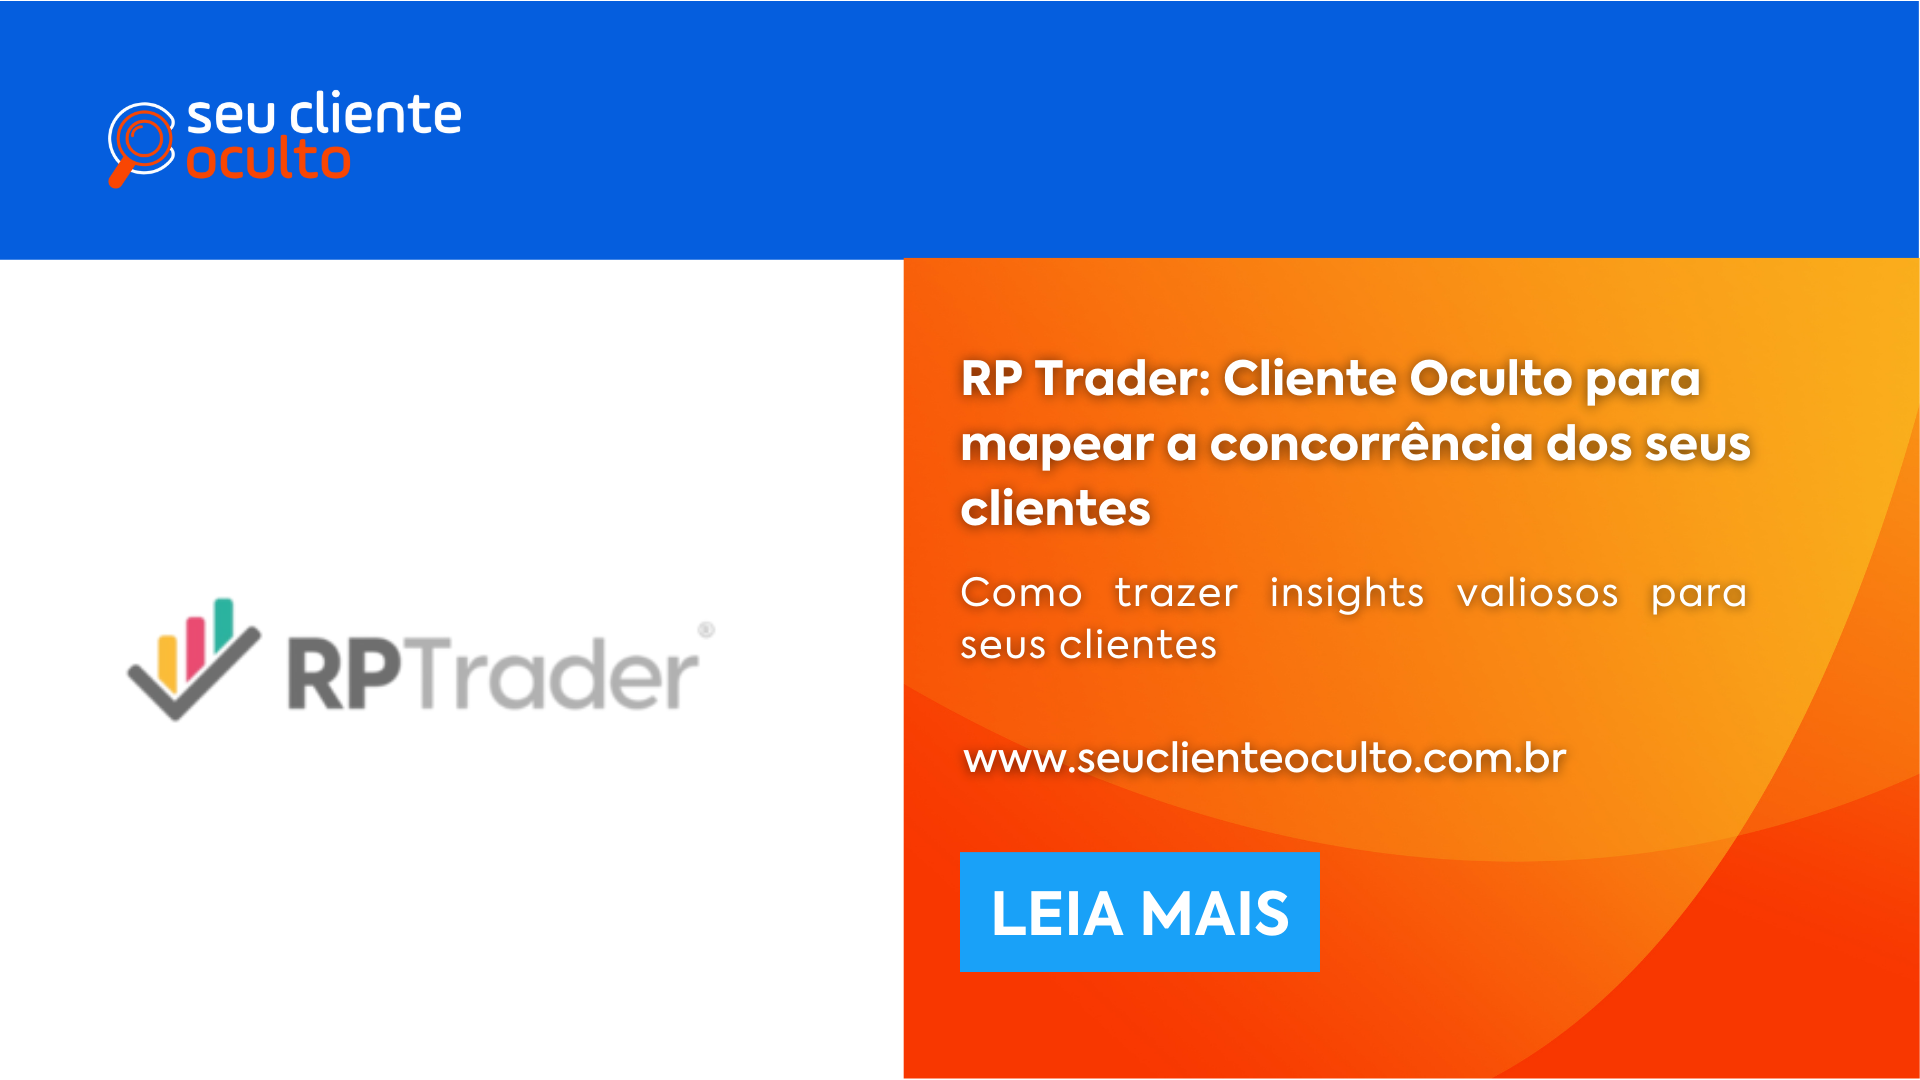 RP Trader: Cliente Oculto para mapear a concorrência dos seus clientes - Seu Cliente Oculto